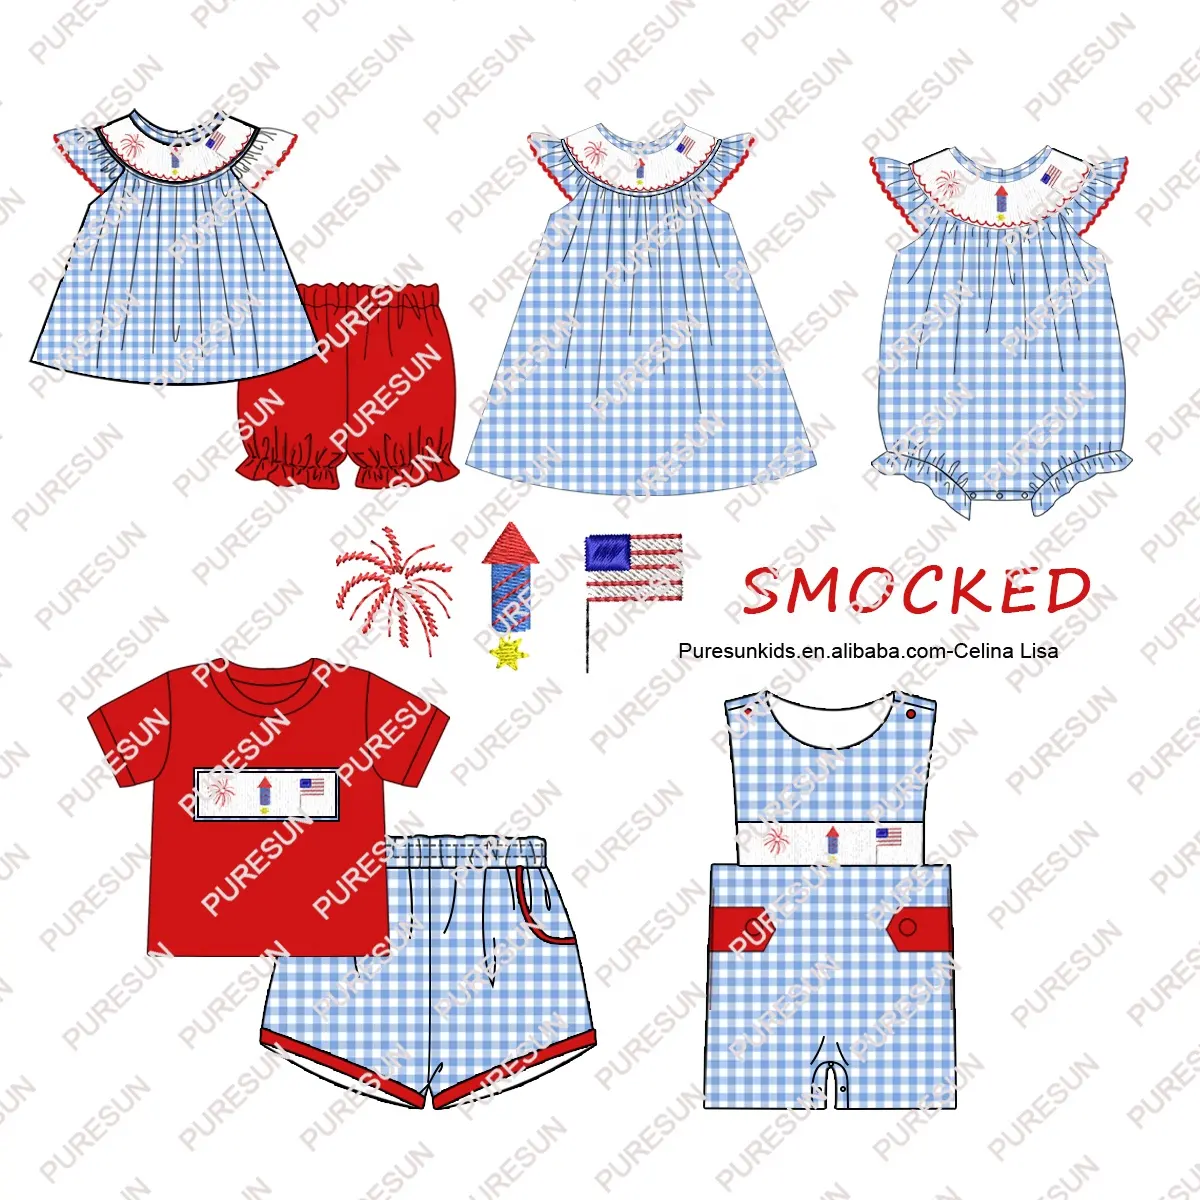 प्योरसन कस्टम बच्चों के कपड़े 4 जुलाई स्मोक्ड बेबी गर्ल रोम्पर ध्वज कढ़ाई बिशप लड़कियों के ग्रीष्मकालीन कपड़े